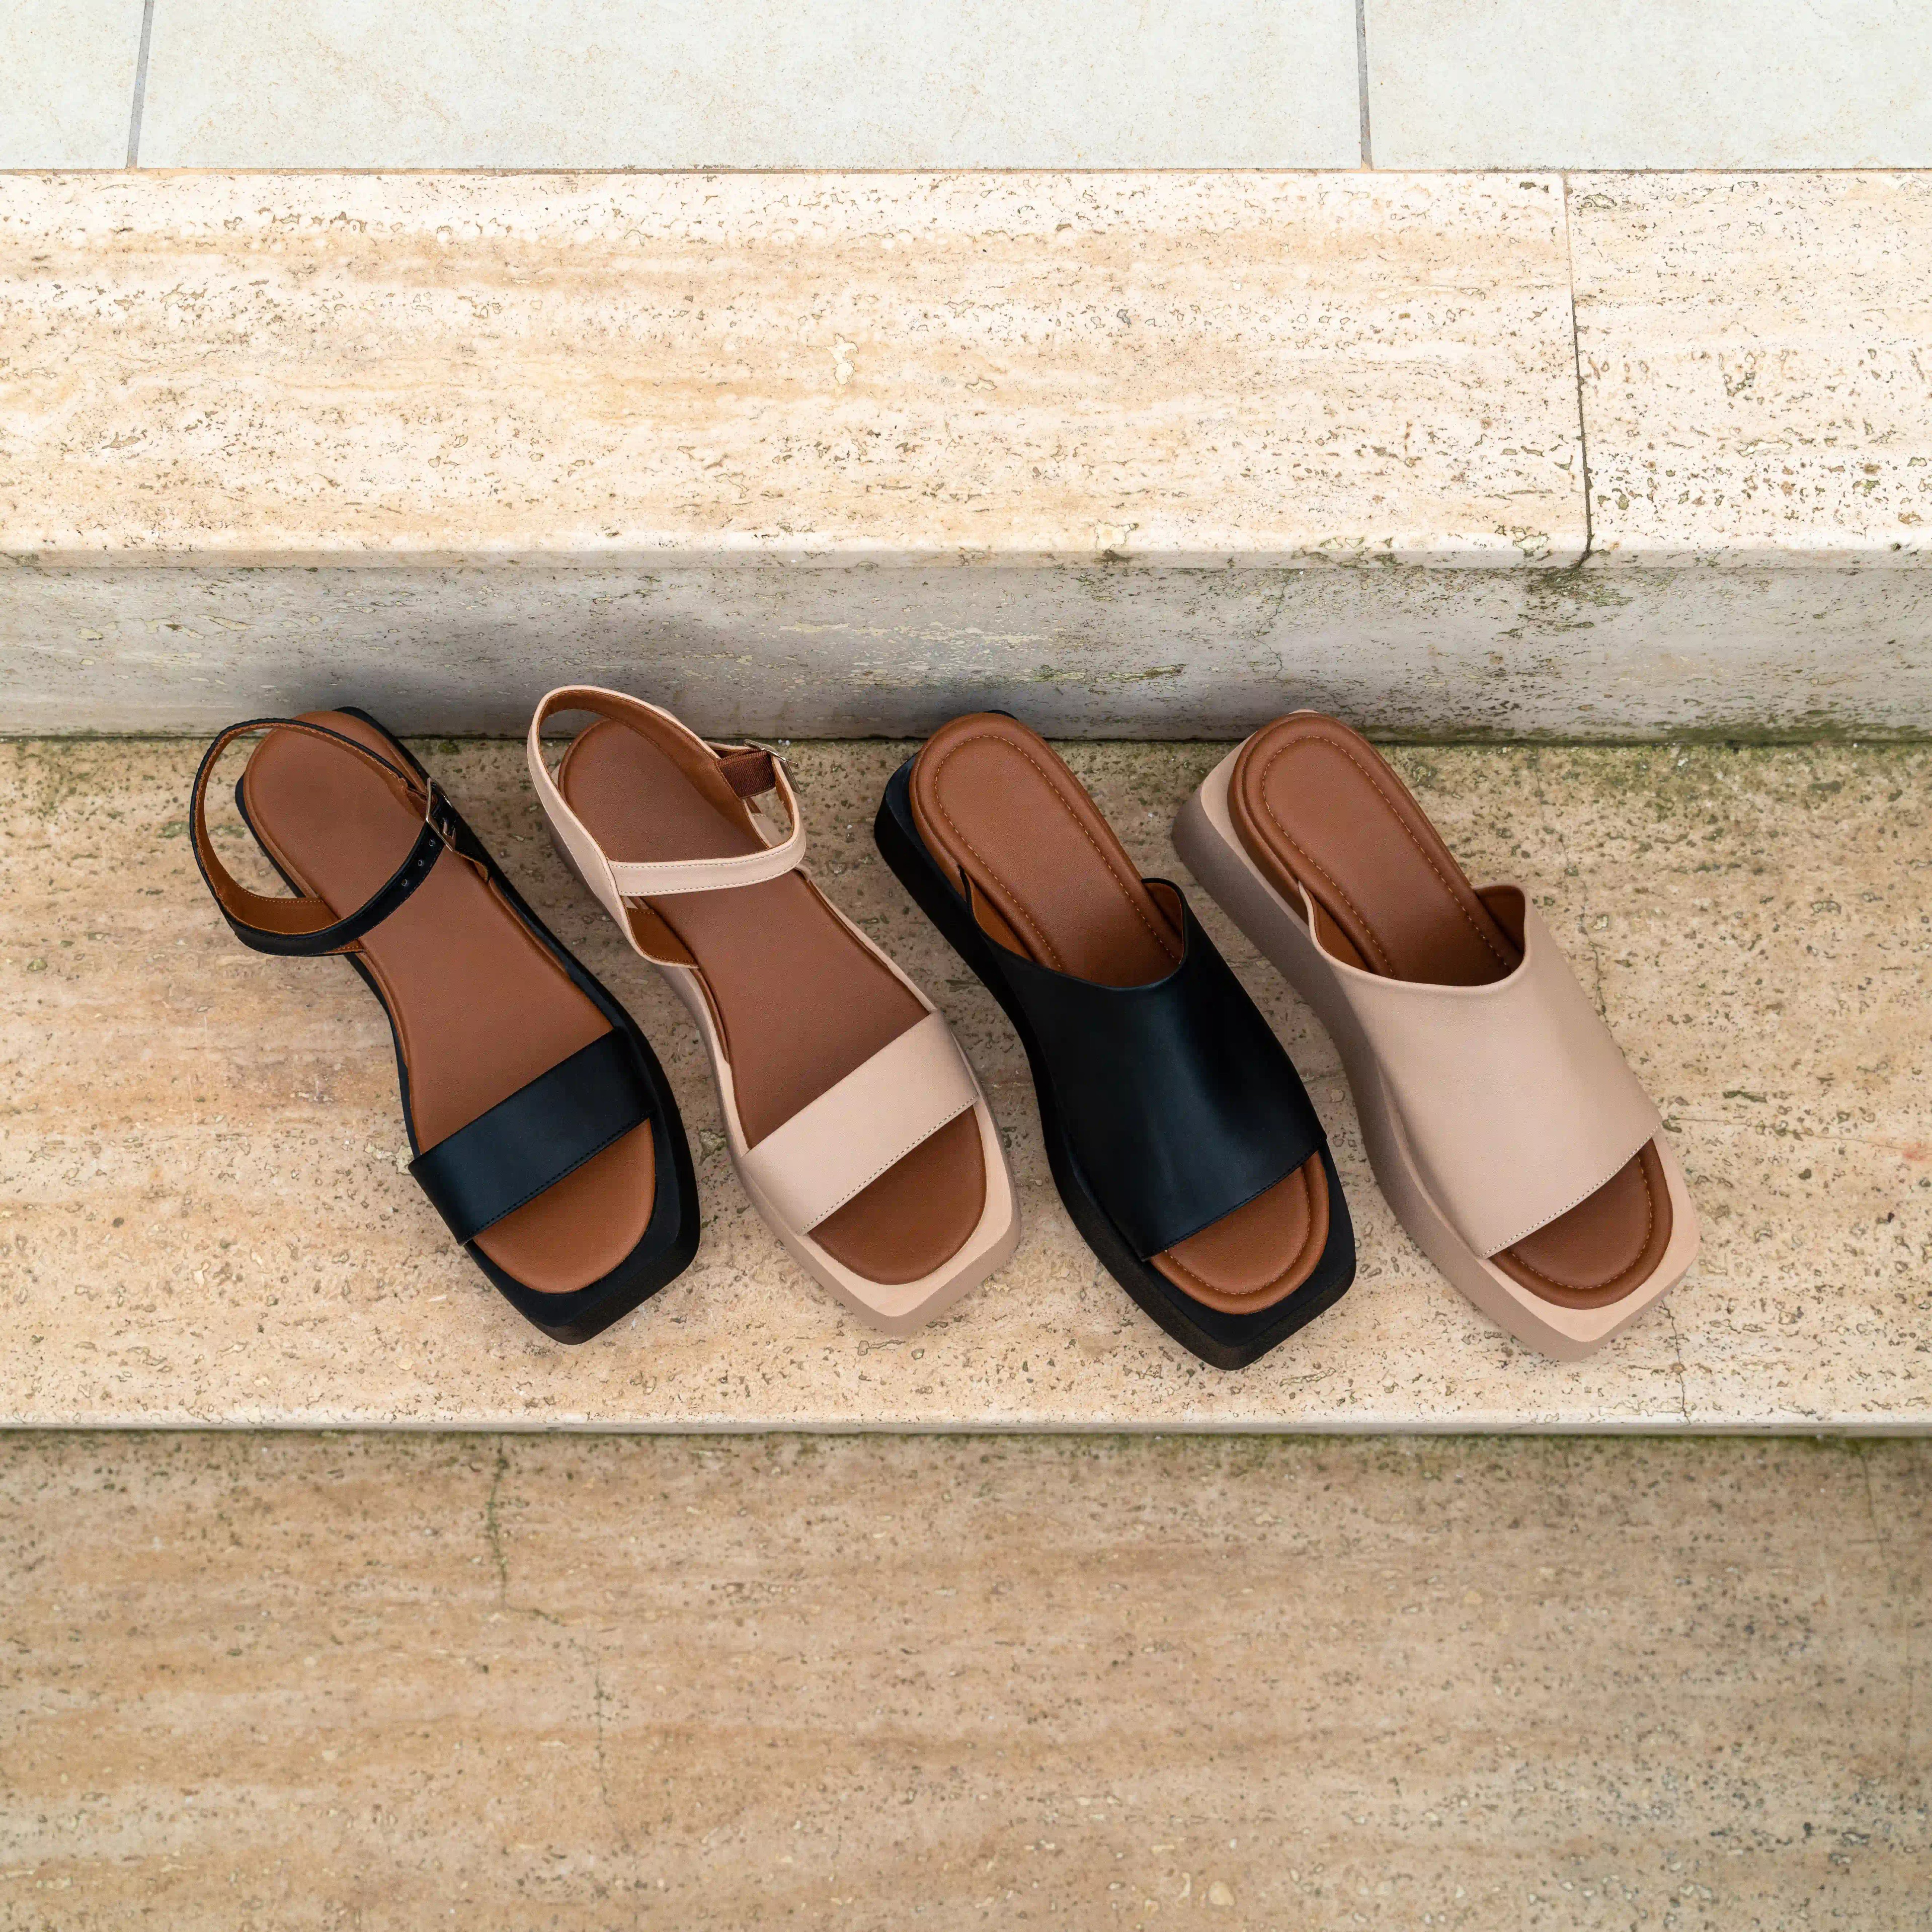 Platform Sandals - Beige